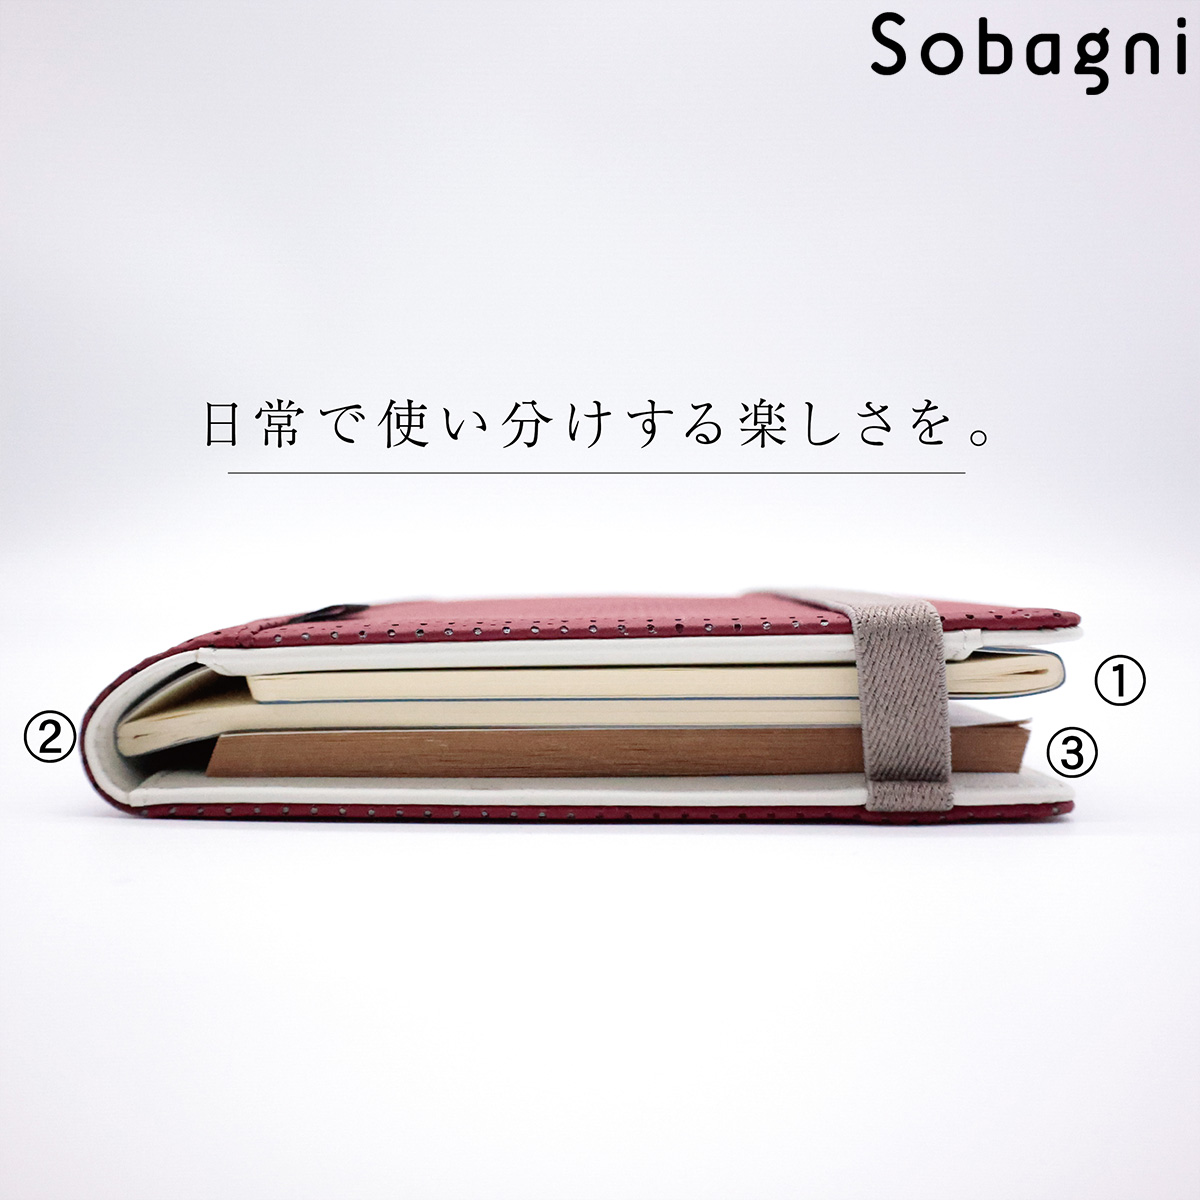 ソバニ公式 サンサツハイルーノ ノートカバー ハードカバー A5サイズ